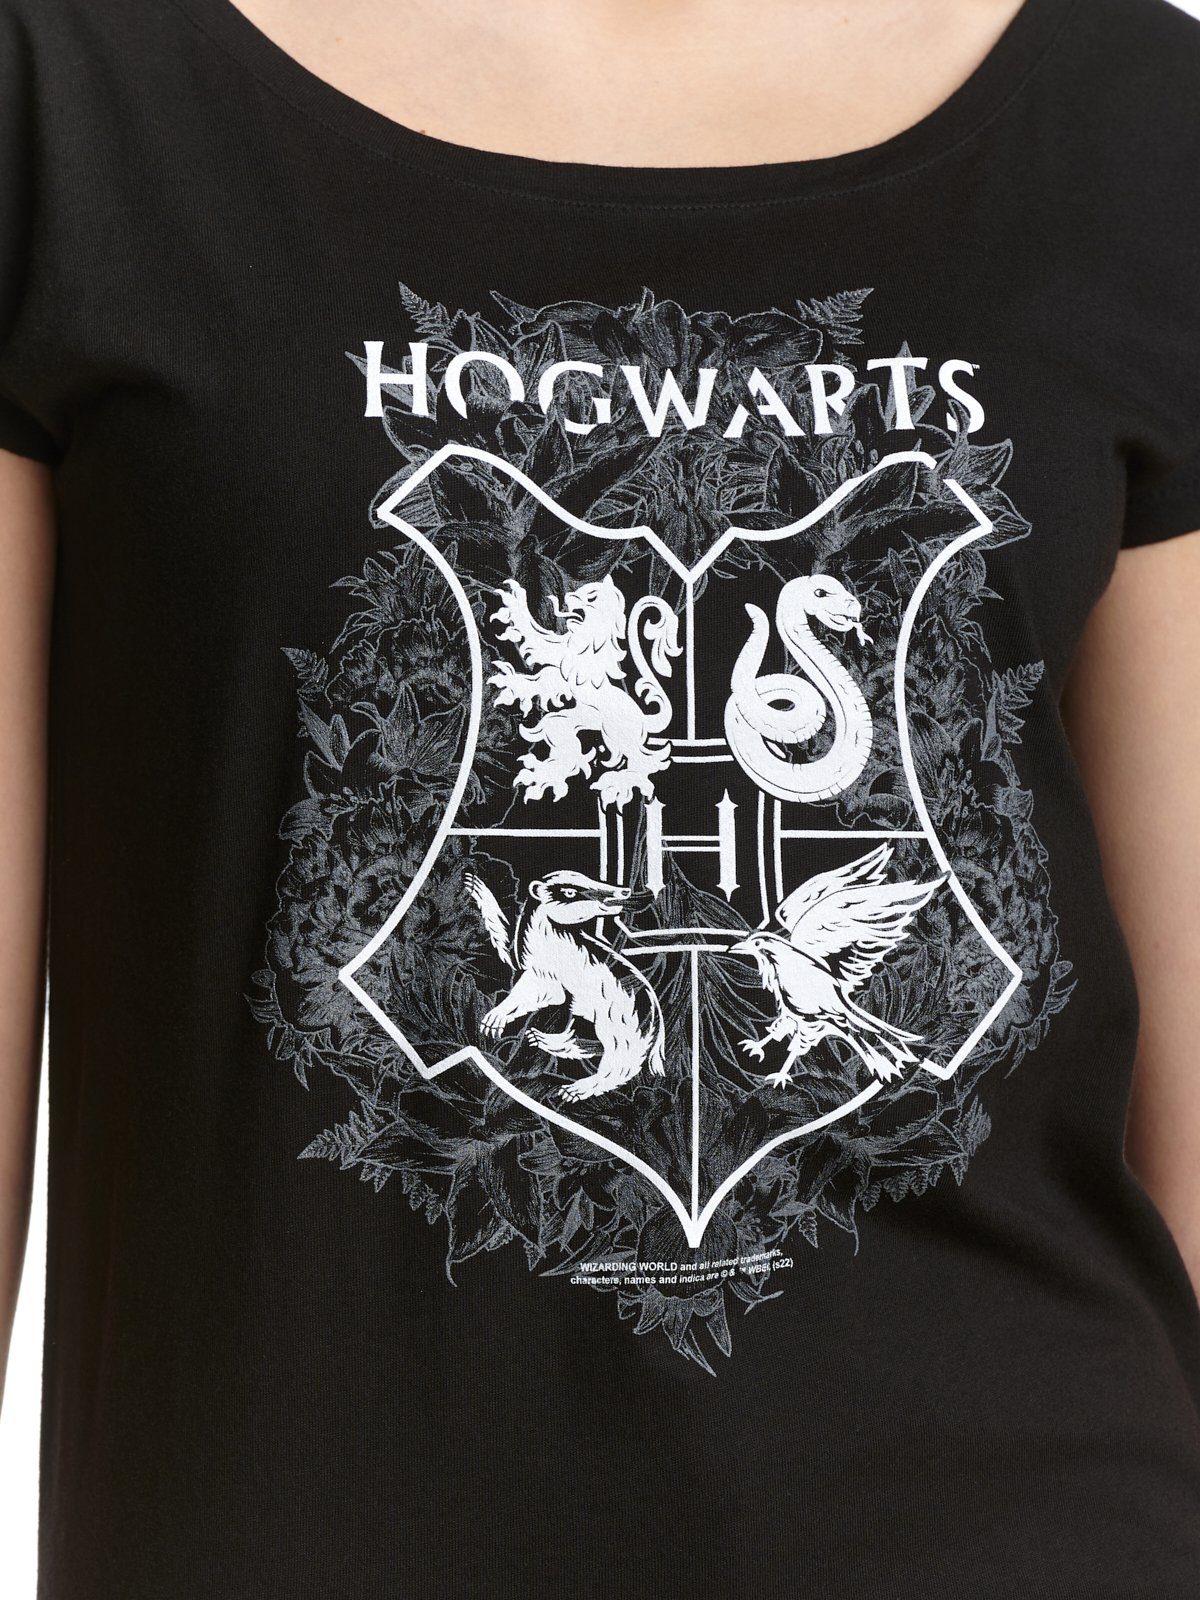 T-Shirt Hogwarts Area Grey Potter Harry Warner